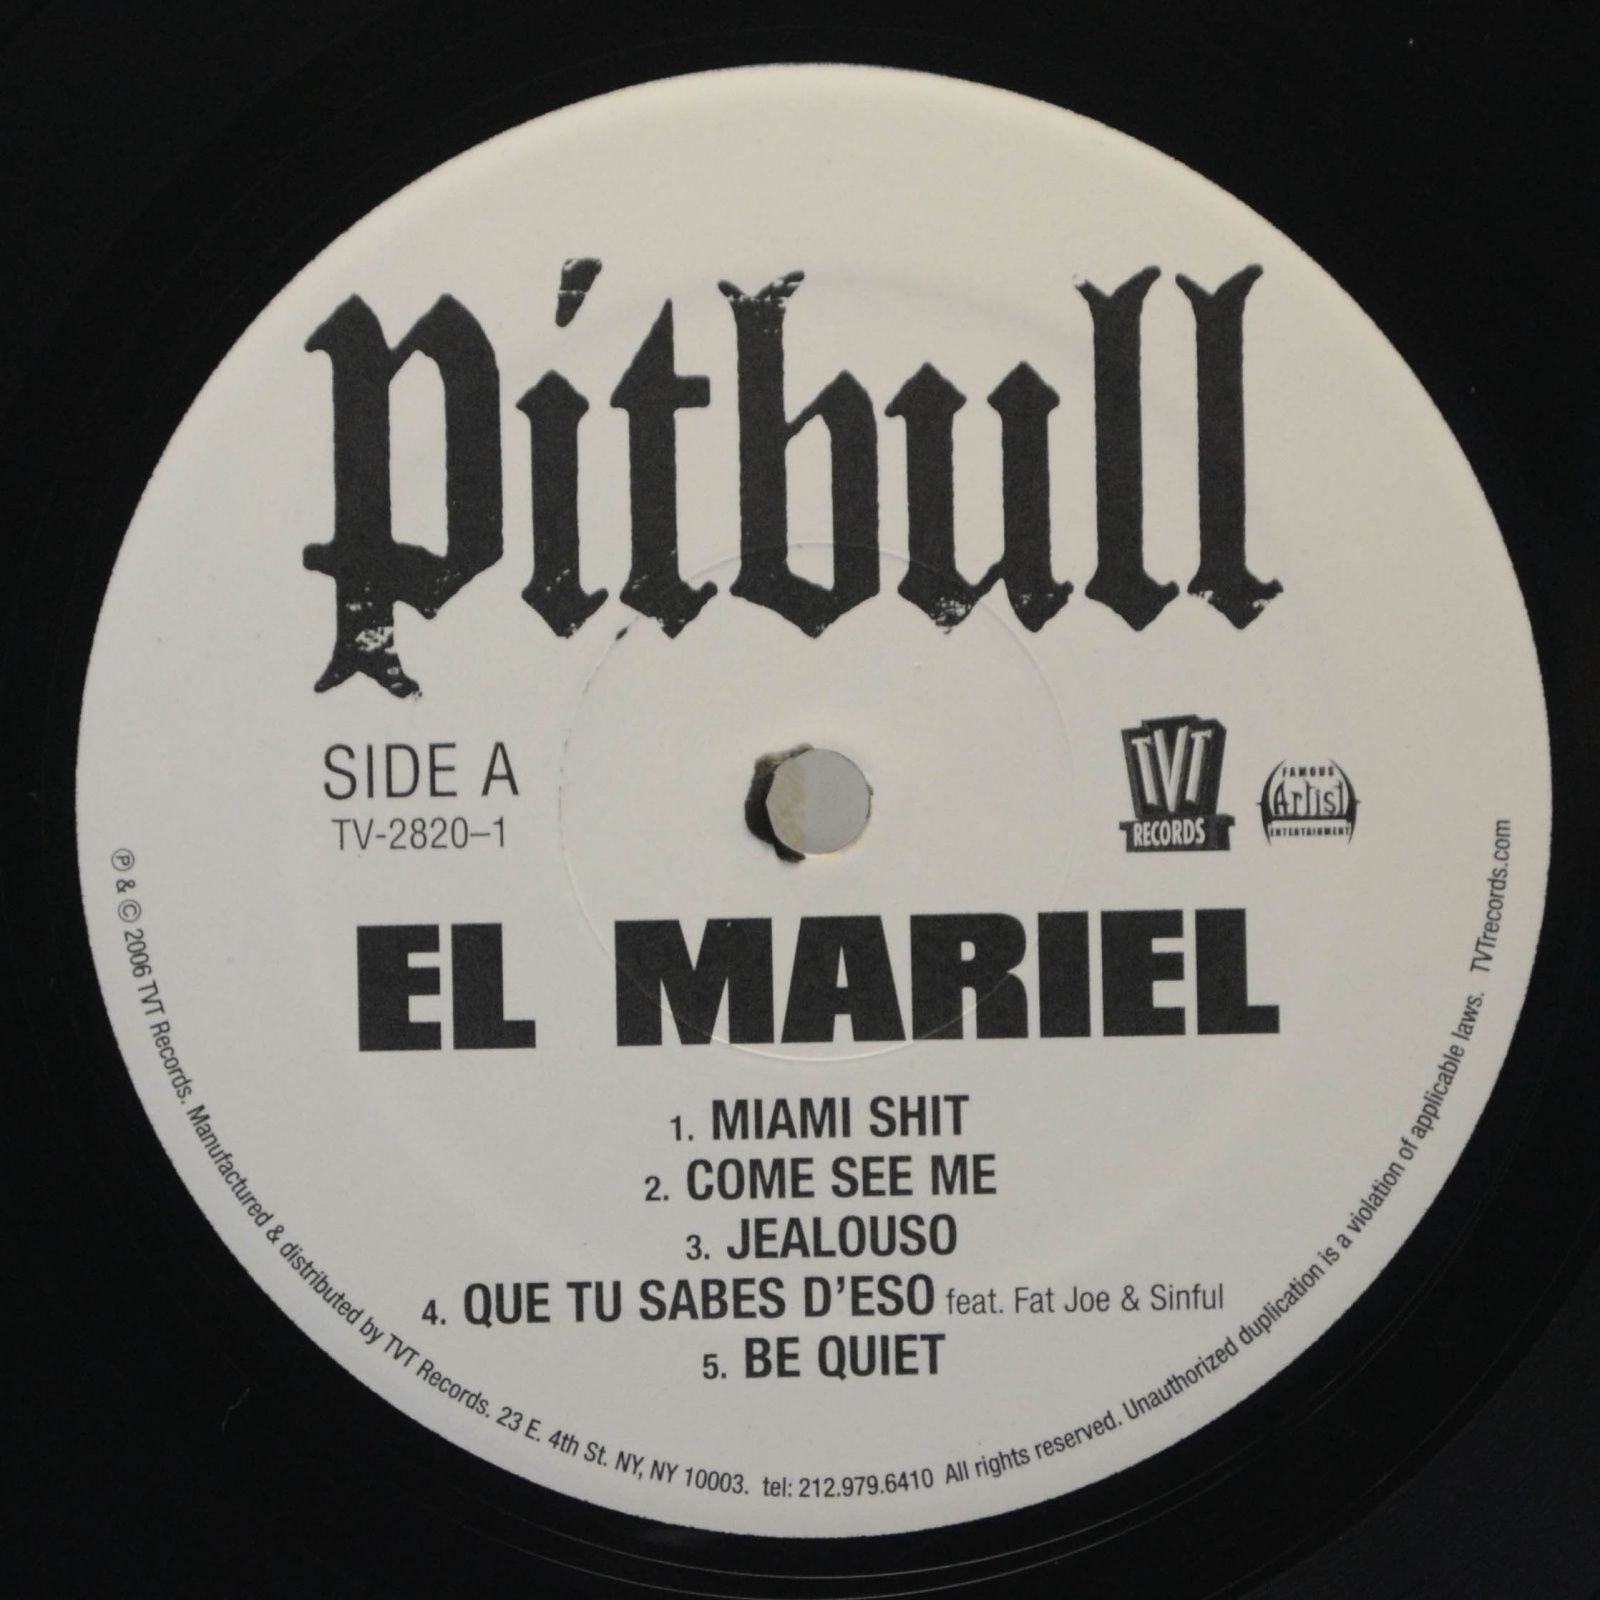 Pitbull — El Mariel, 2006